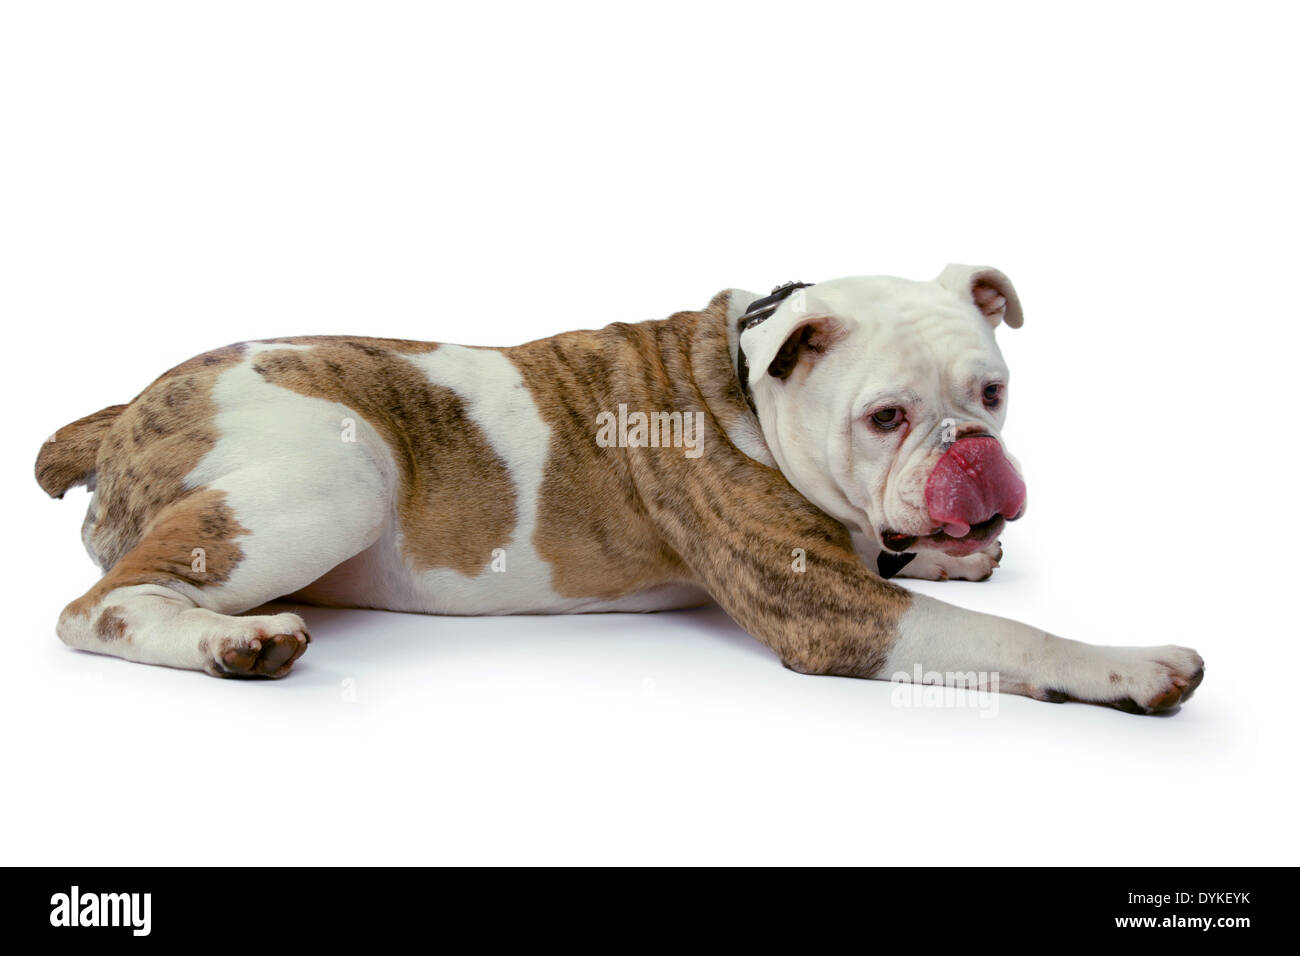 Englische Bulldogge, Canis lupus f. familiaris, Bulldog inglese, Englische Bulldogge vor weissen Hintergrund Foto Stock